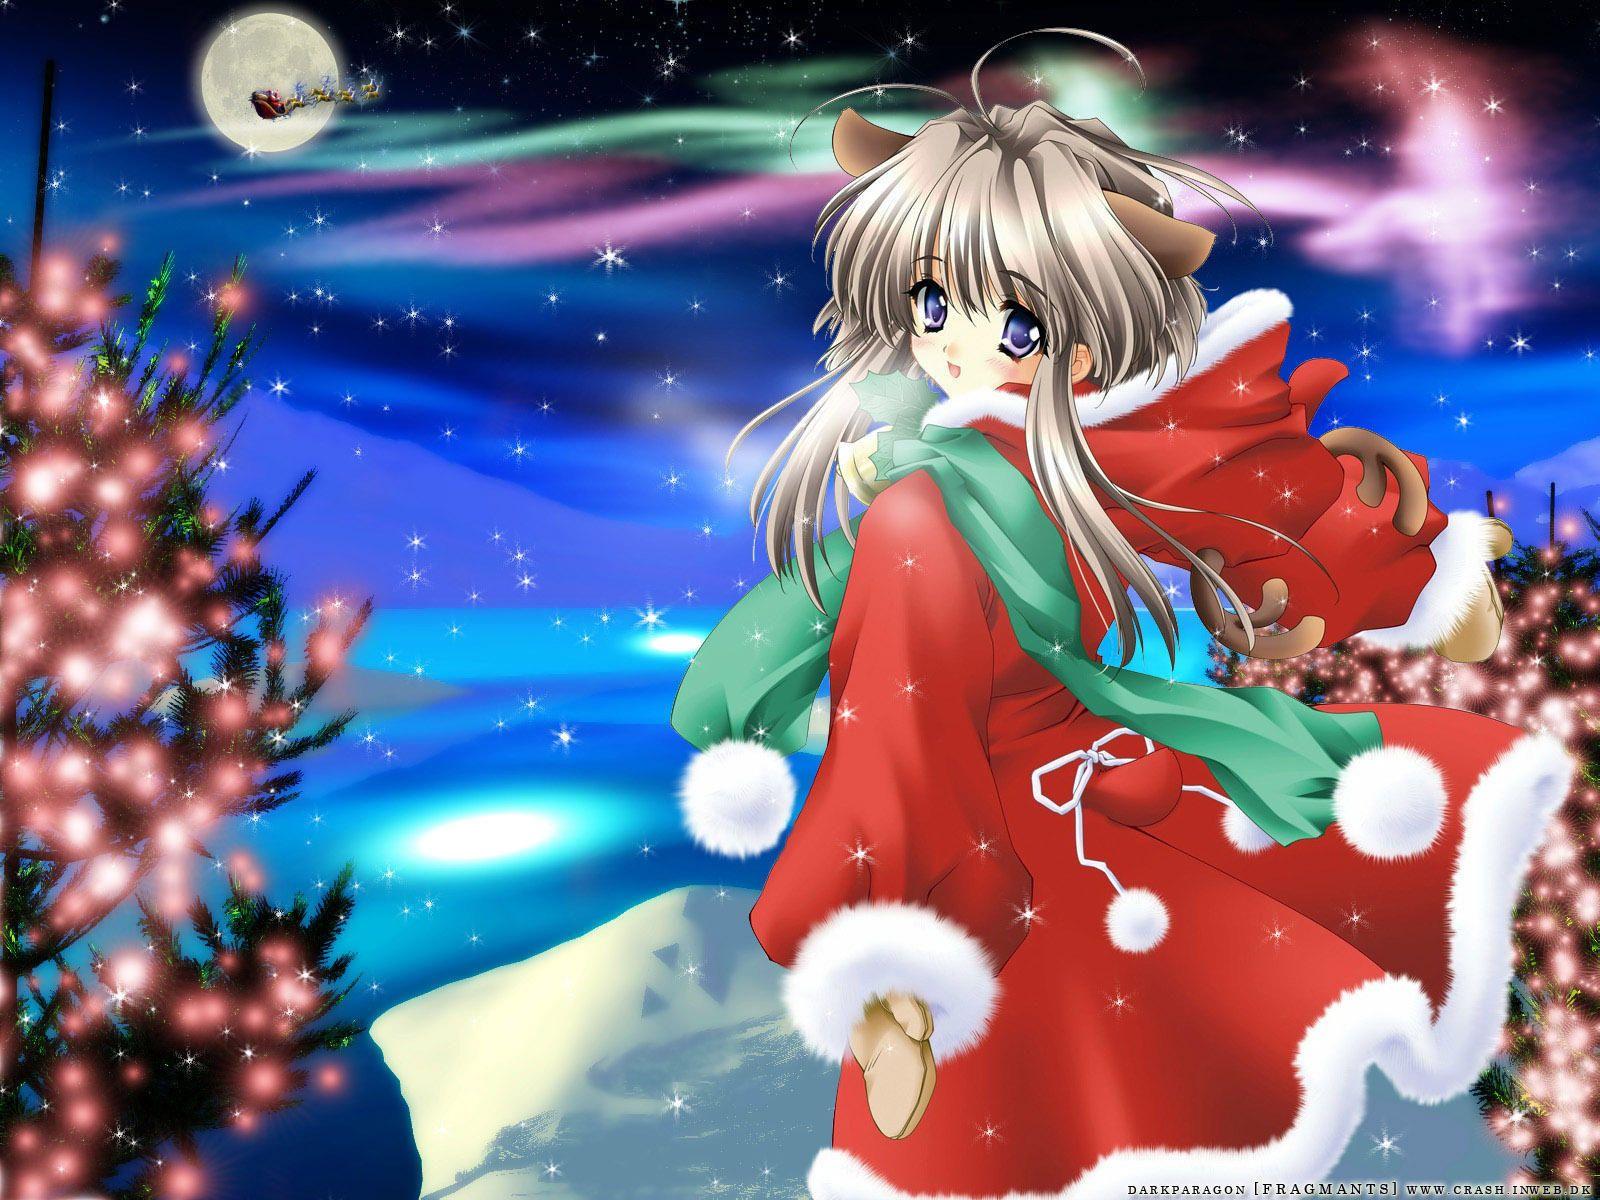 Download the Anime Christmas Wallpaper, Anime Christmas iPhone